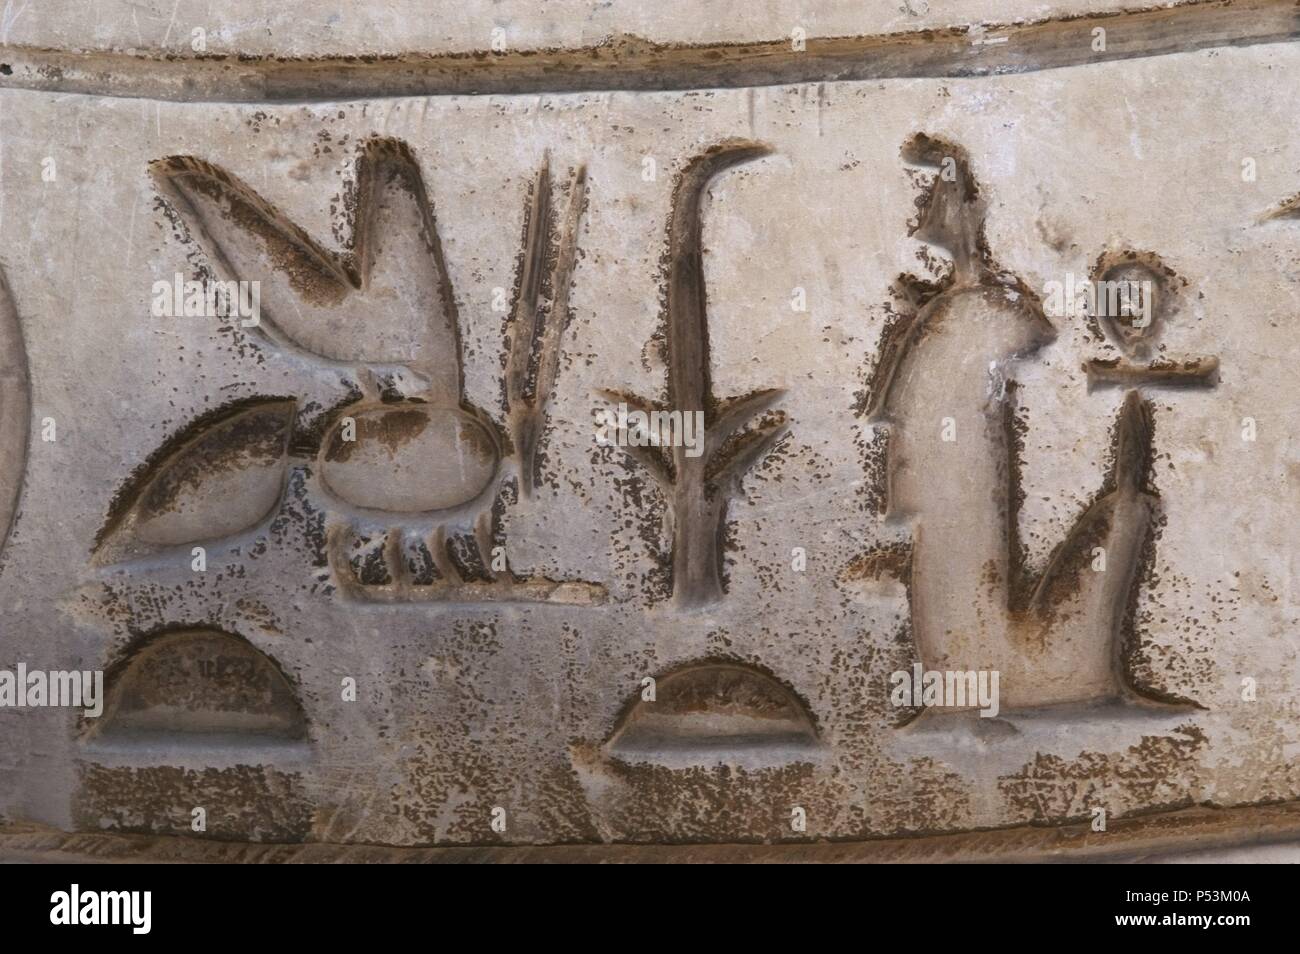 L'écriture hiéroglyphique. Mit Rahina Open Air Museum. Memphis. L'Égypte. Banque D'Images